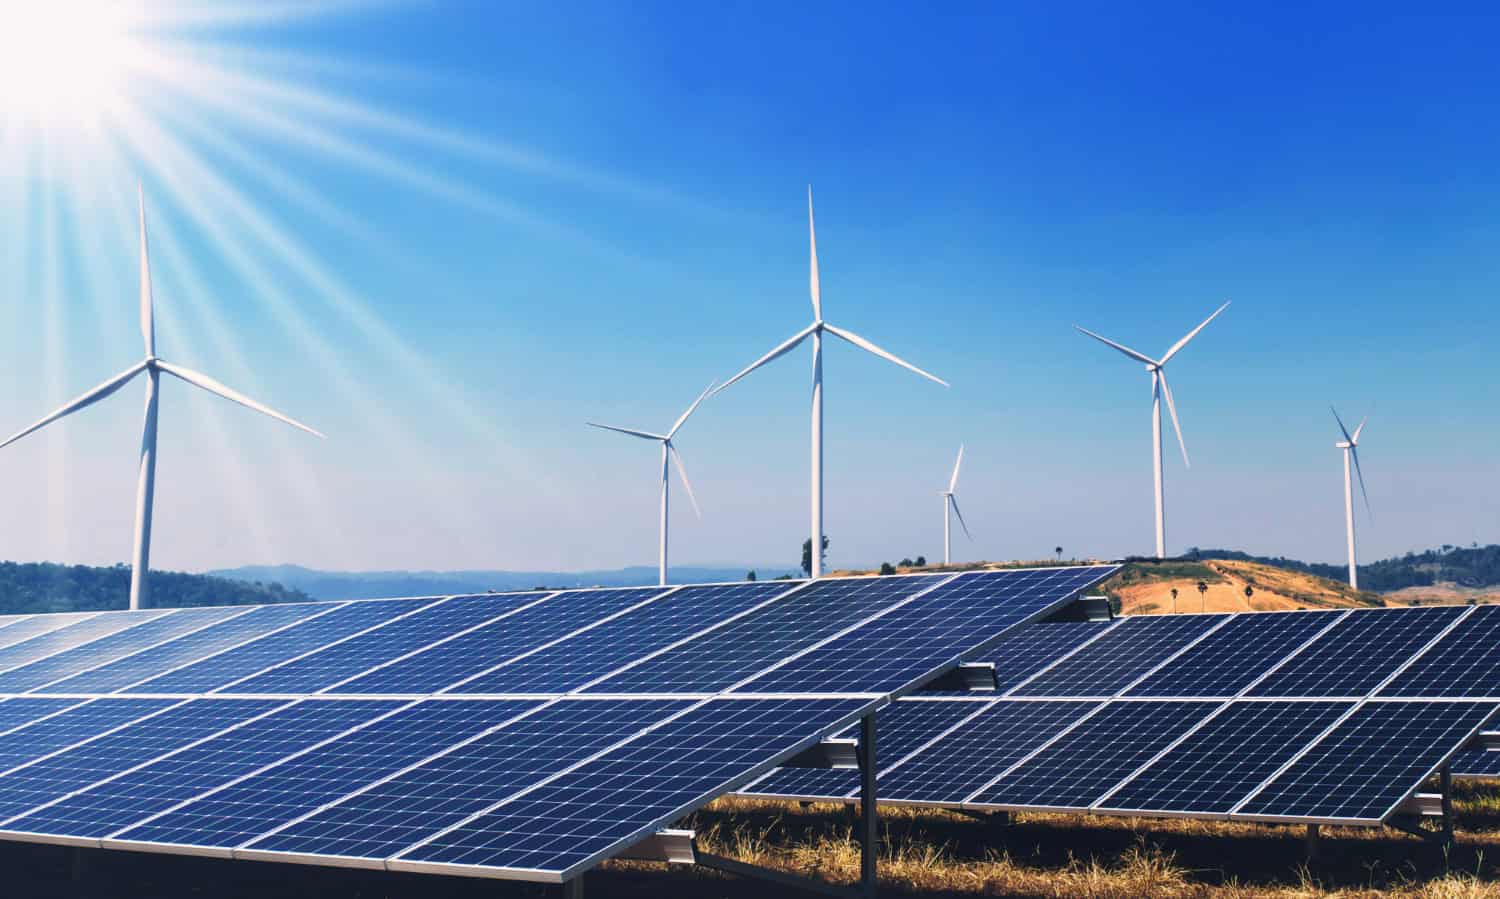 Odnawialne źródła energii zaspokoiły 97% polskiego zapotrzebowania na energię elektryczną. Rekordowe pięć godzin ujemnych cen prądu.